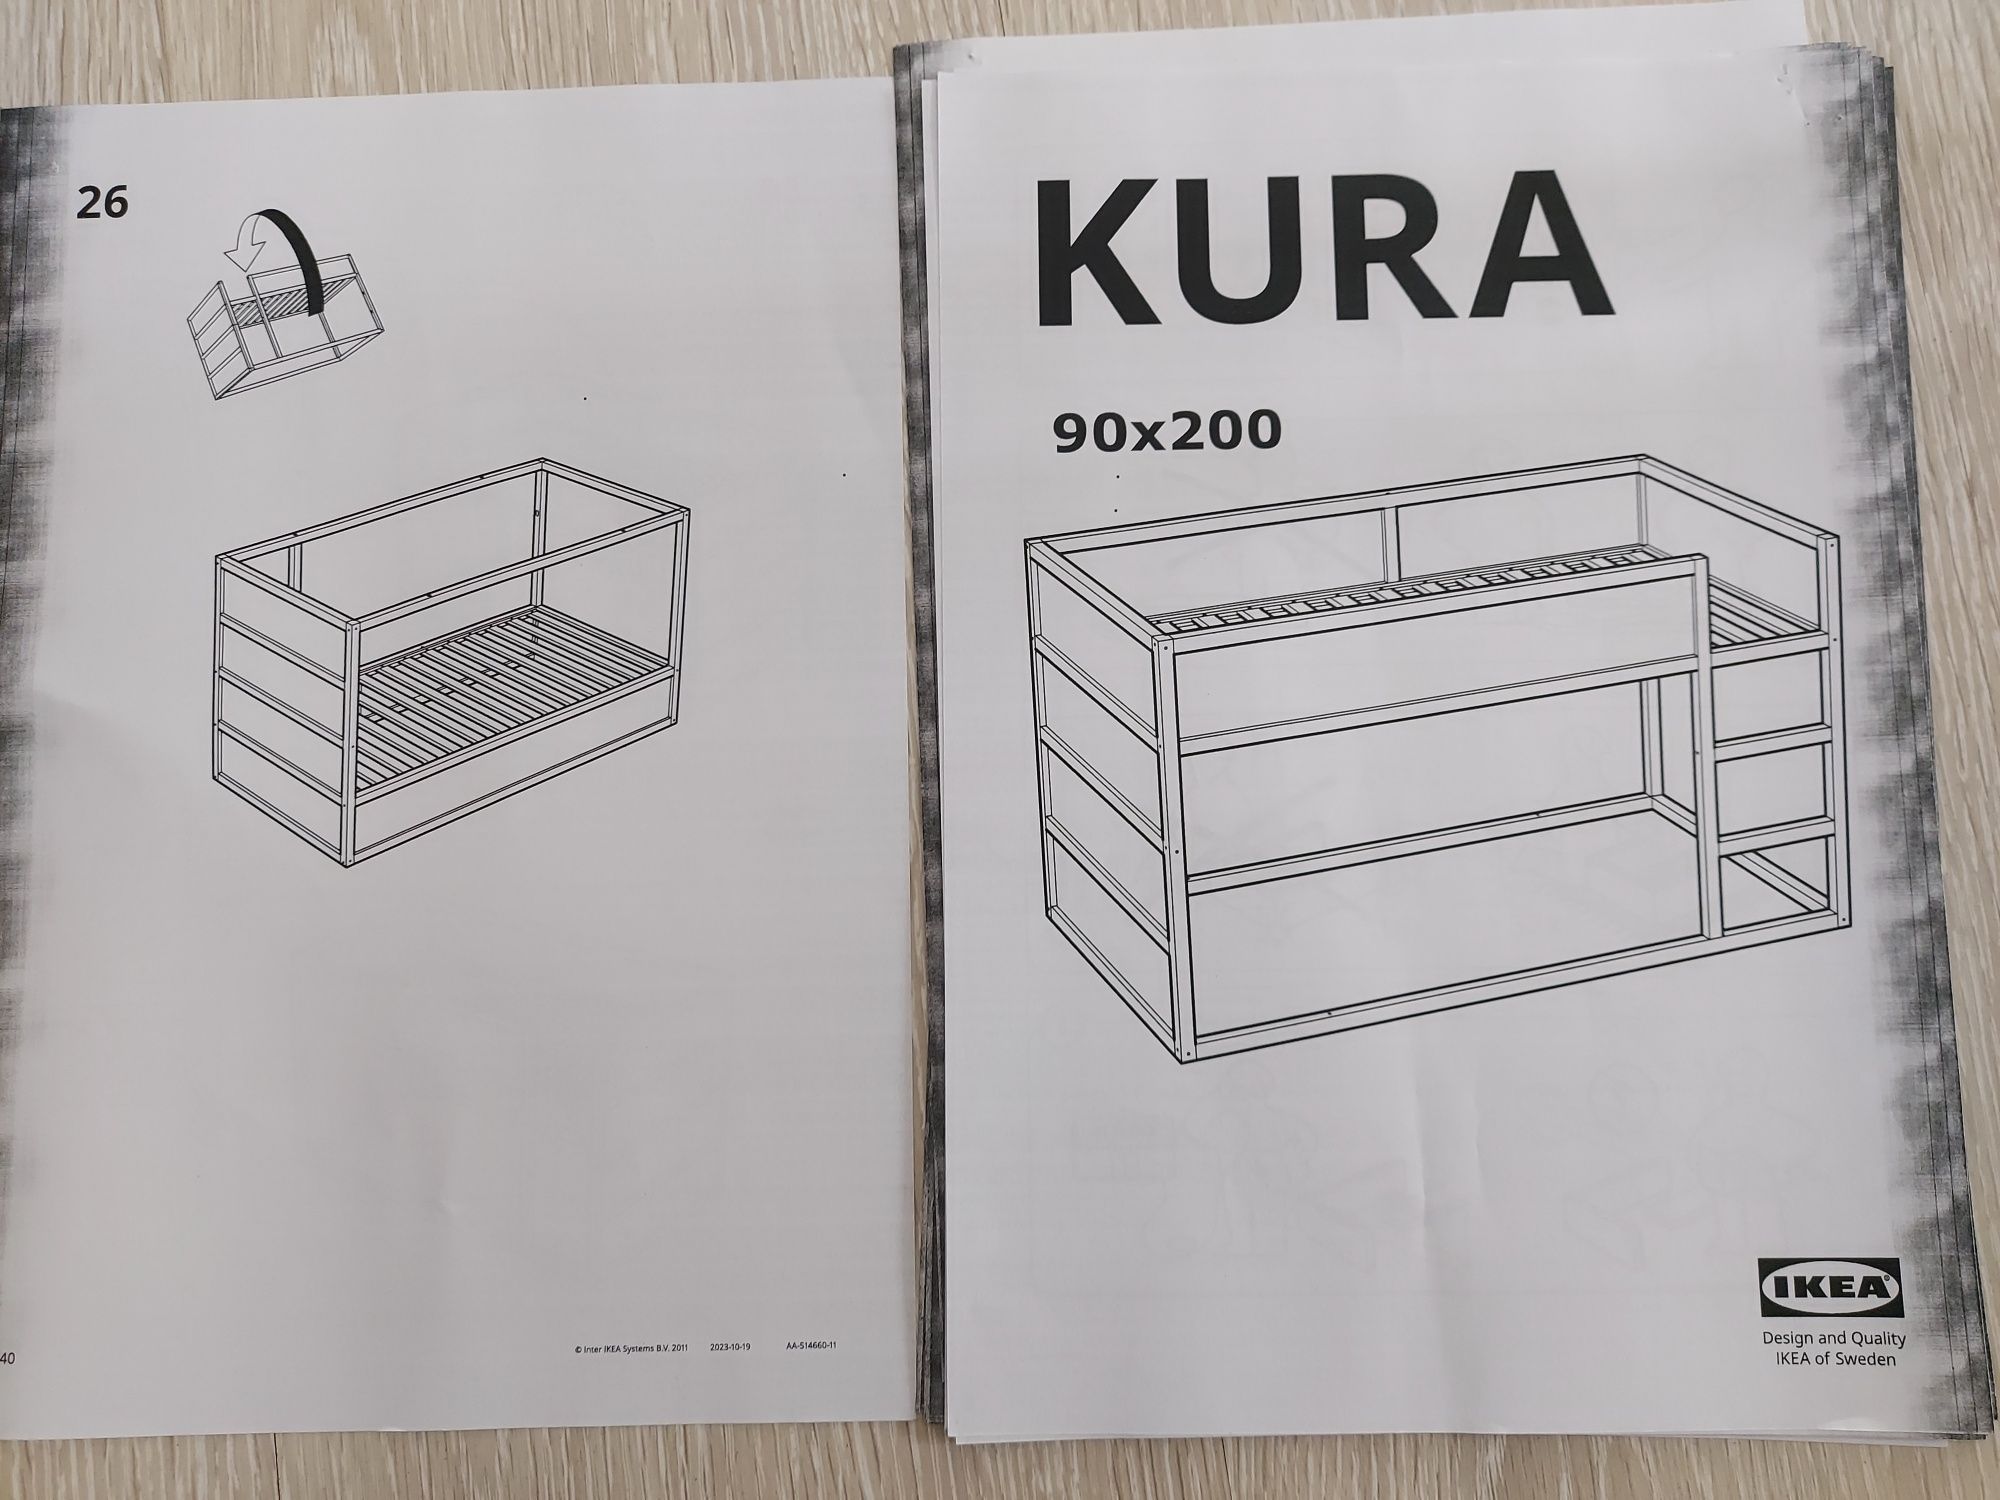 Łóżko dziecięce KURA IKEA  90 x 200